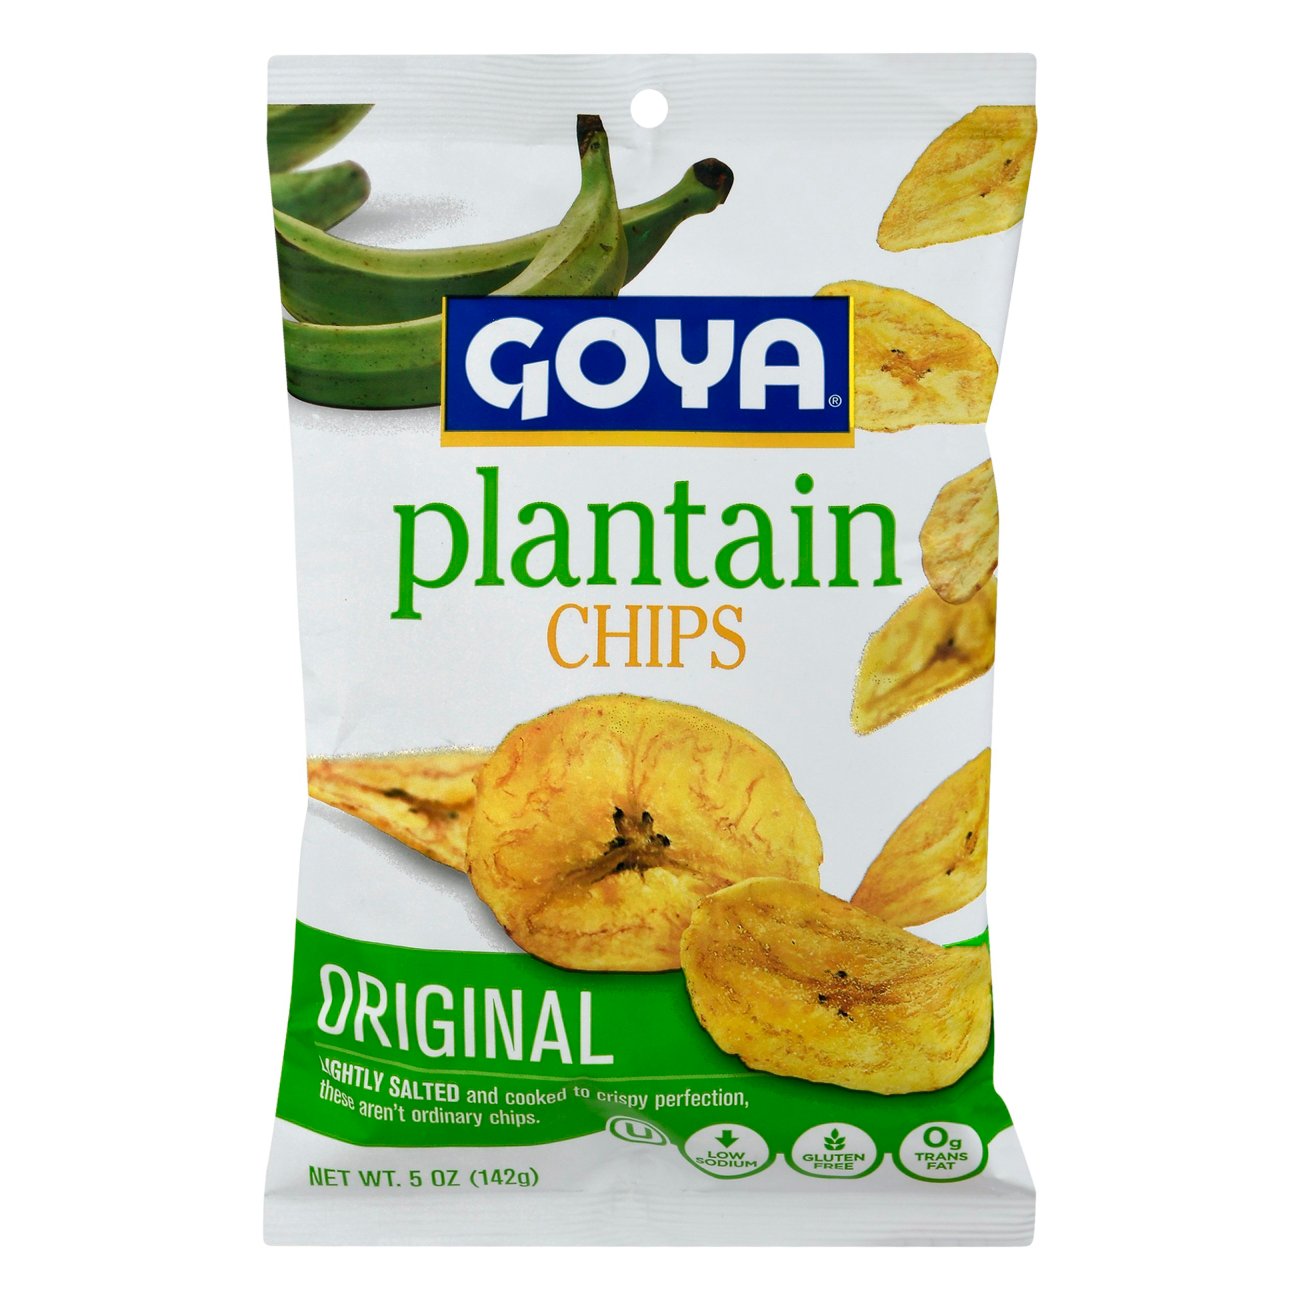 Goya Plantain Chips Platanitos - Shop Chips at H-E-B